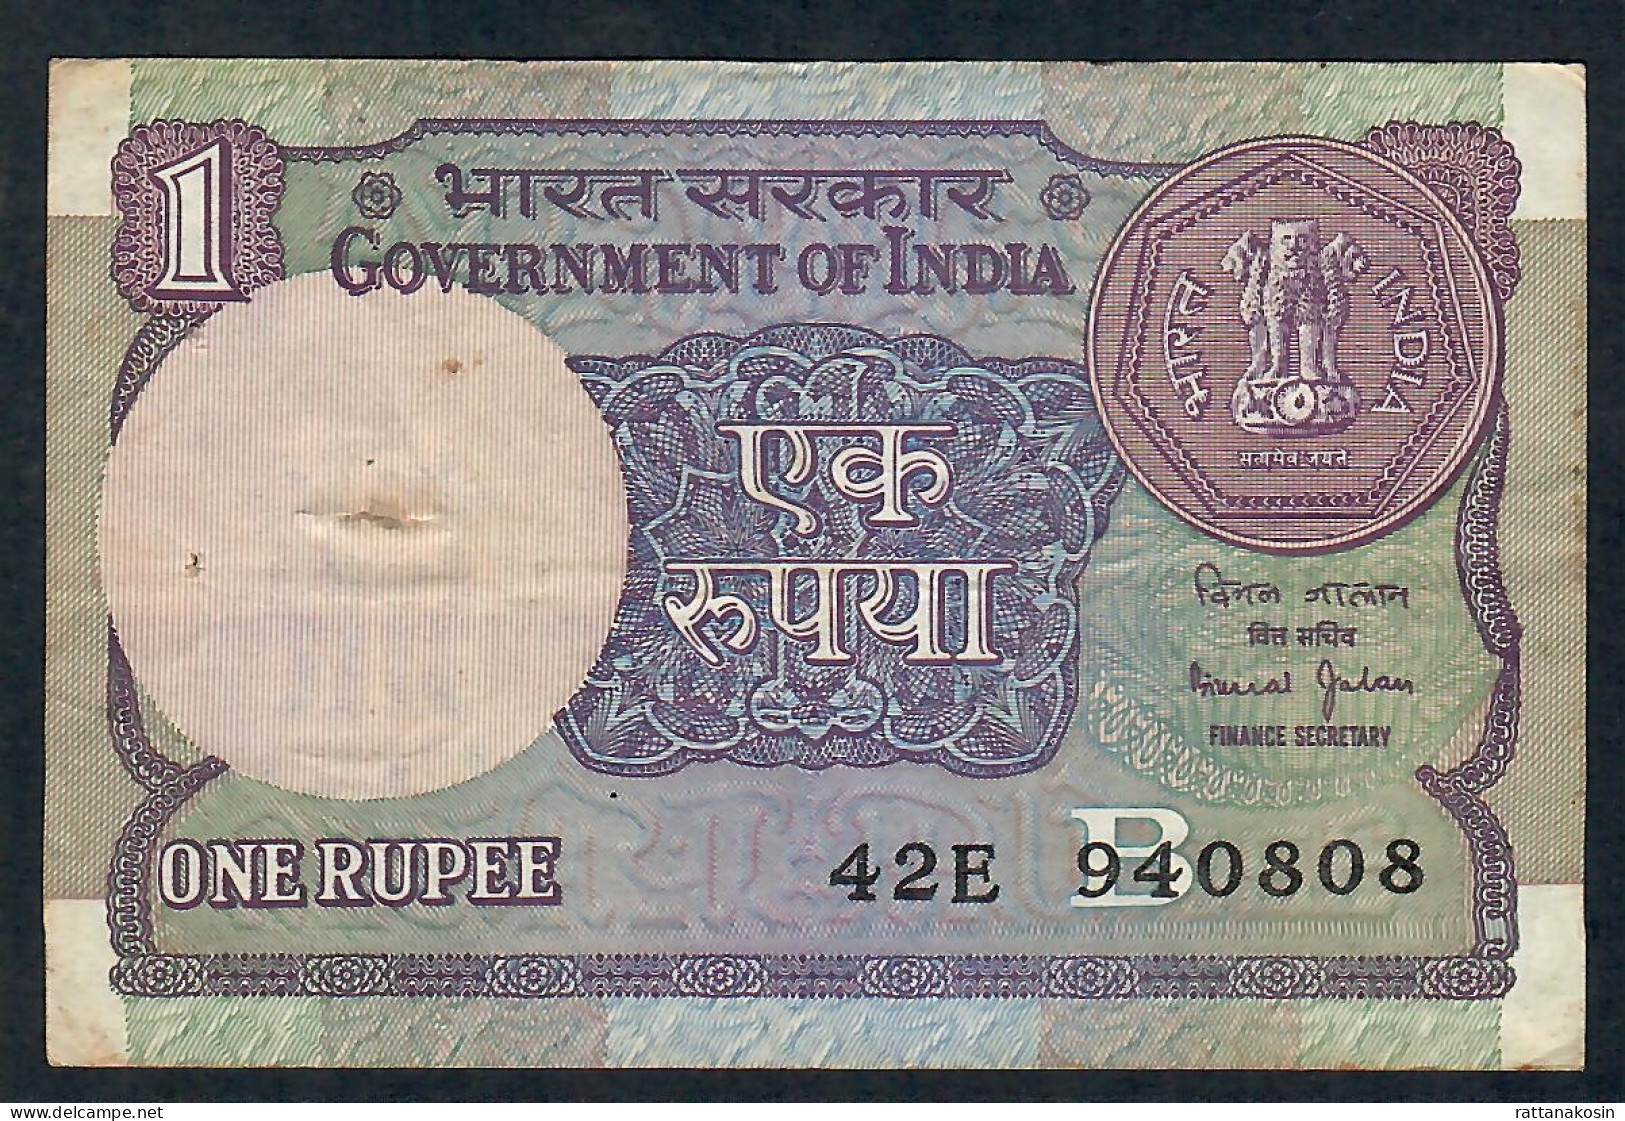 INDIA P78Aj 1 RUPEE 1990  LETTER B Signature JALAN #42E   VF - Inde